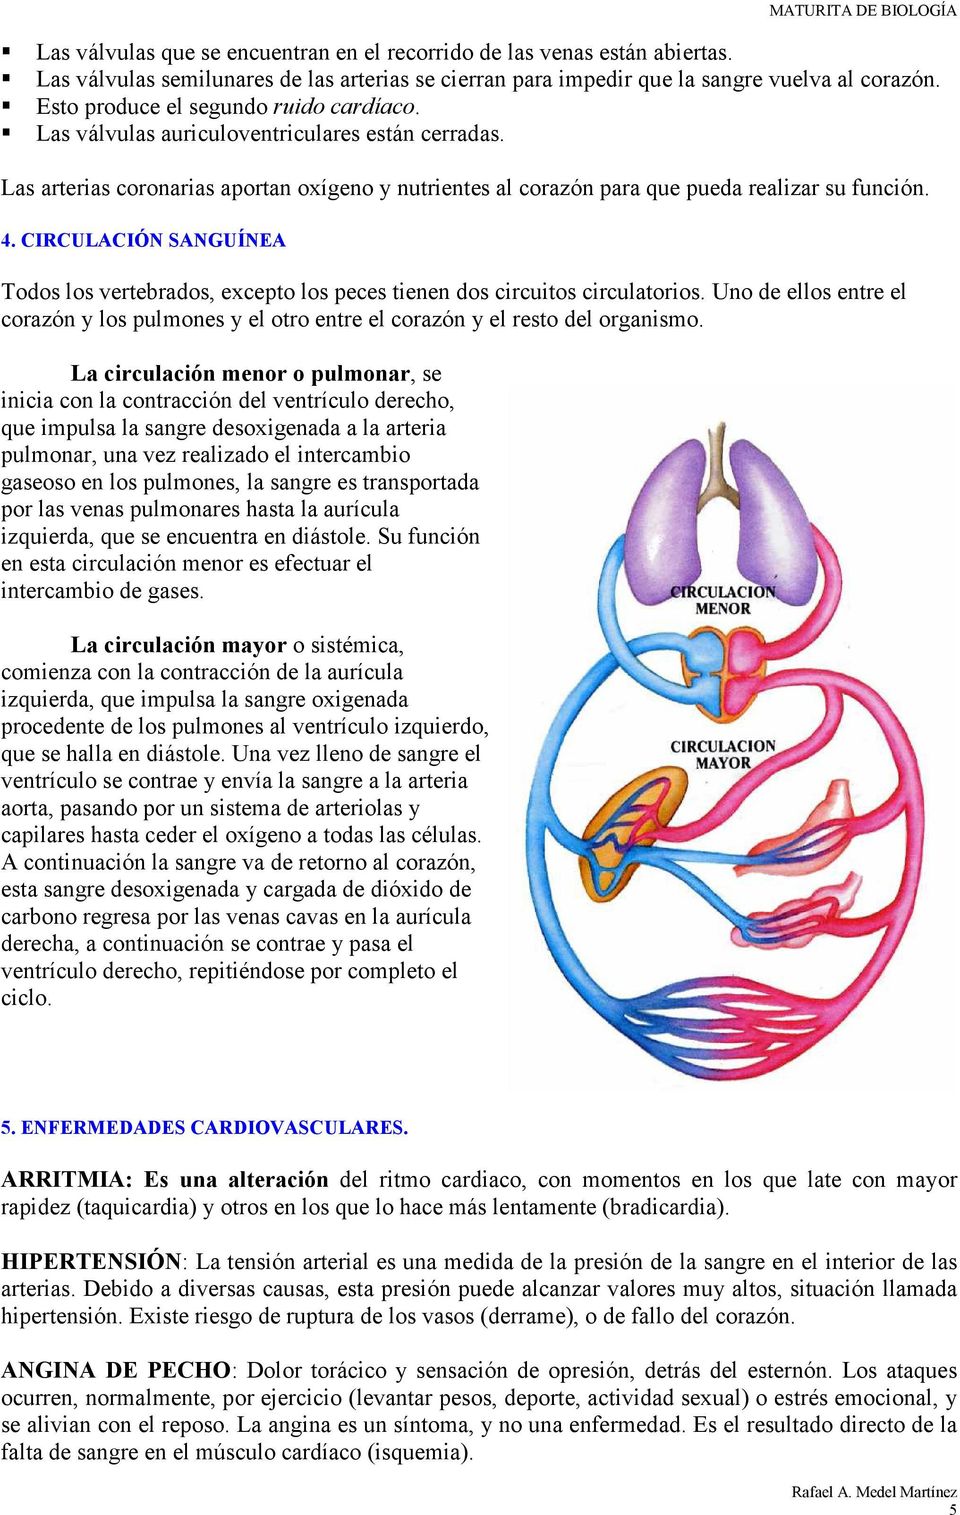 CIRCULACIÓN SANGUÍNEA Todos los vertebrados, excepto los peces tienen dos circuitos circulatorios. Uno de ellos entre el corazón y los pulmones y el otro entre el corazón y el resto del organismo.